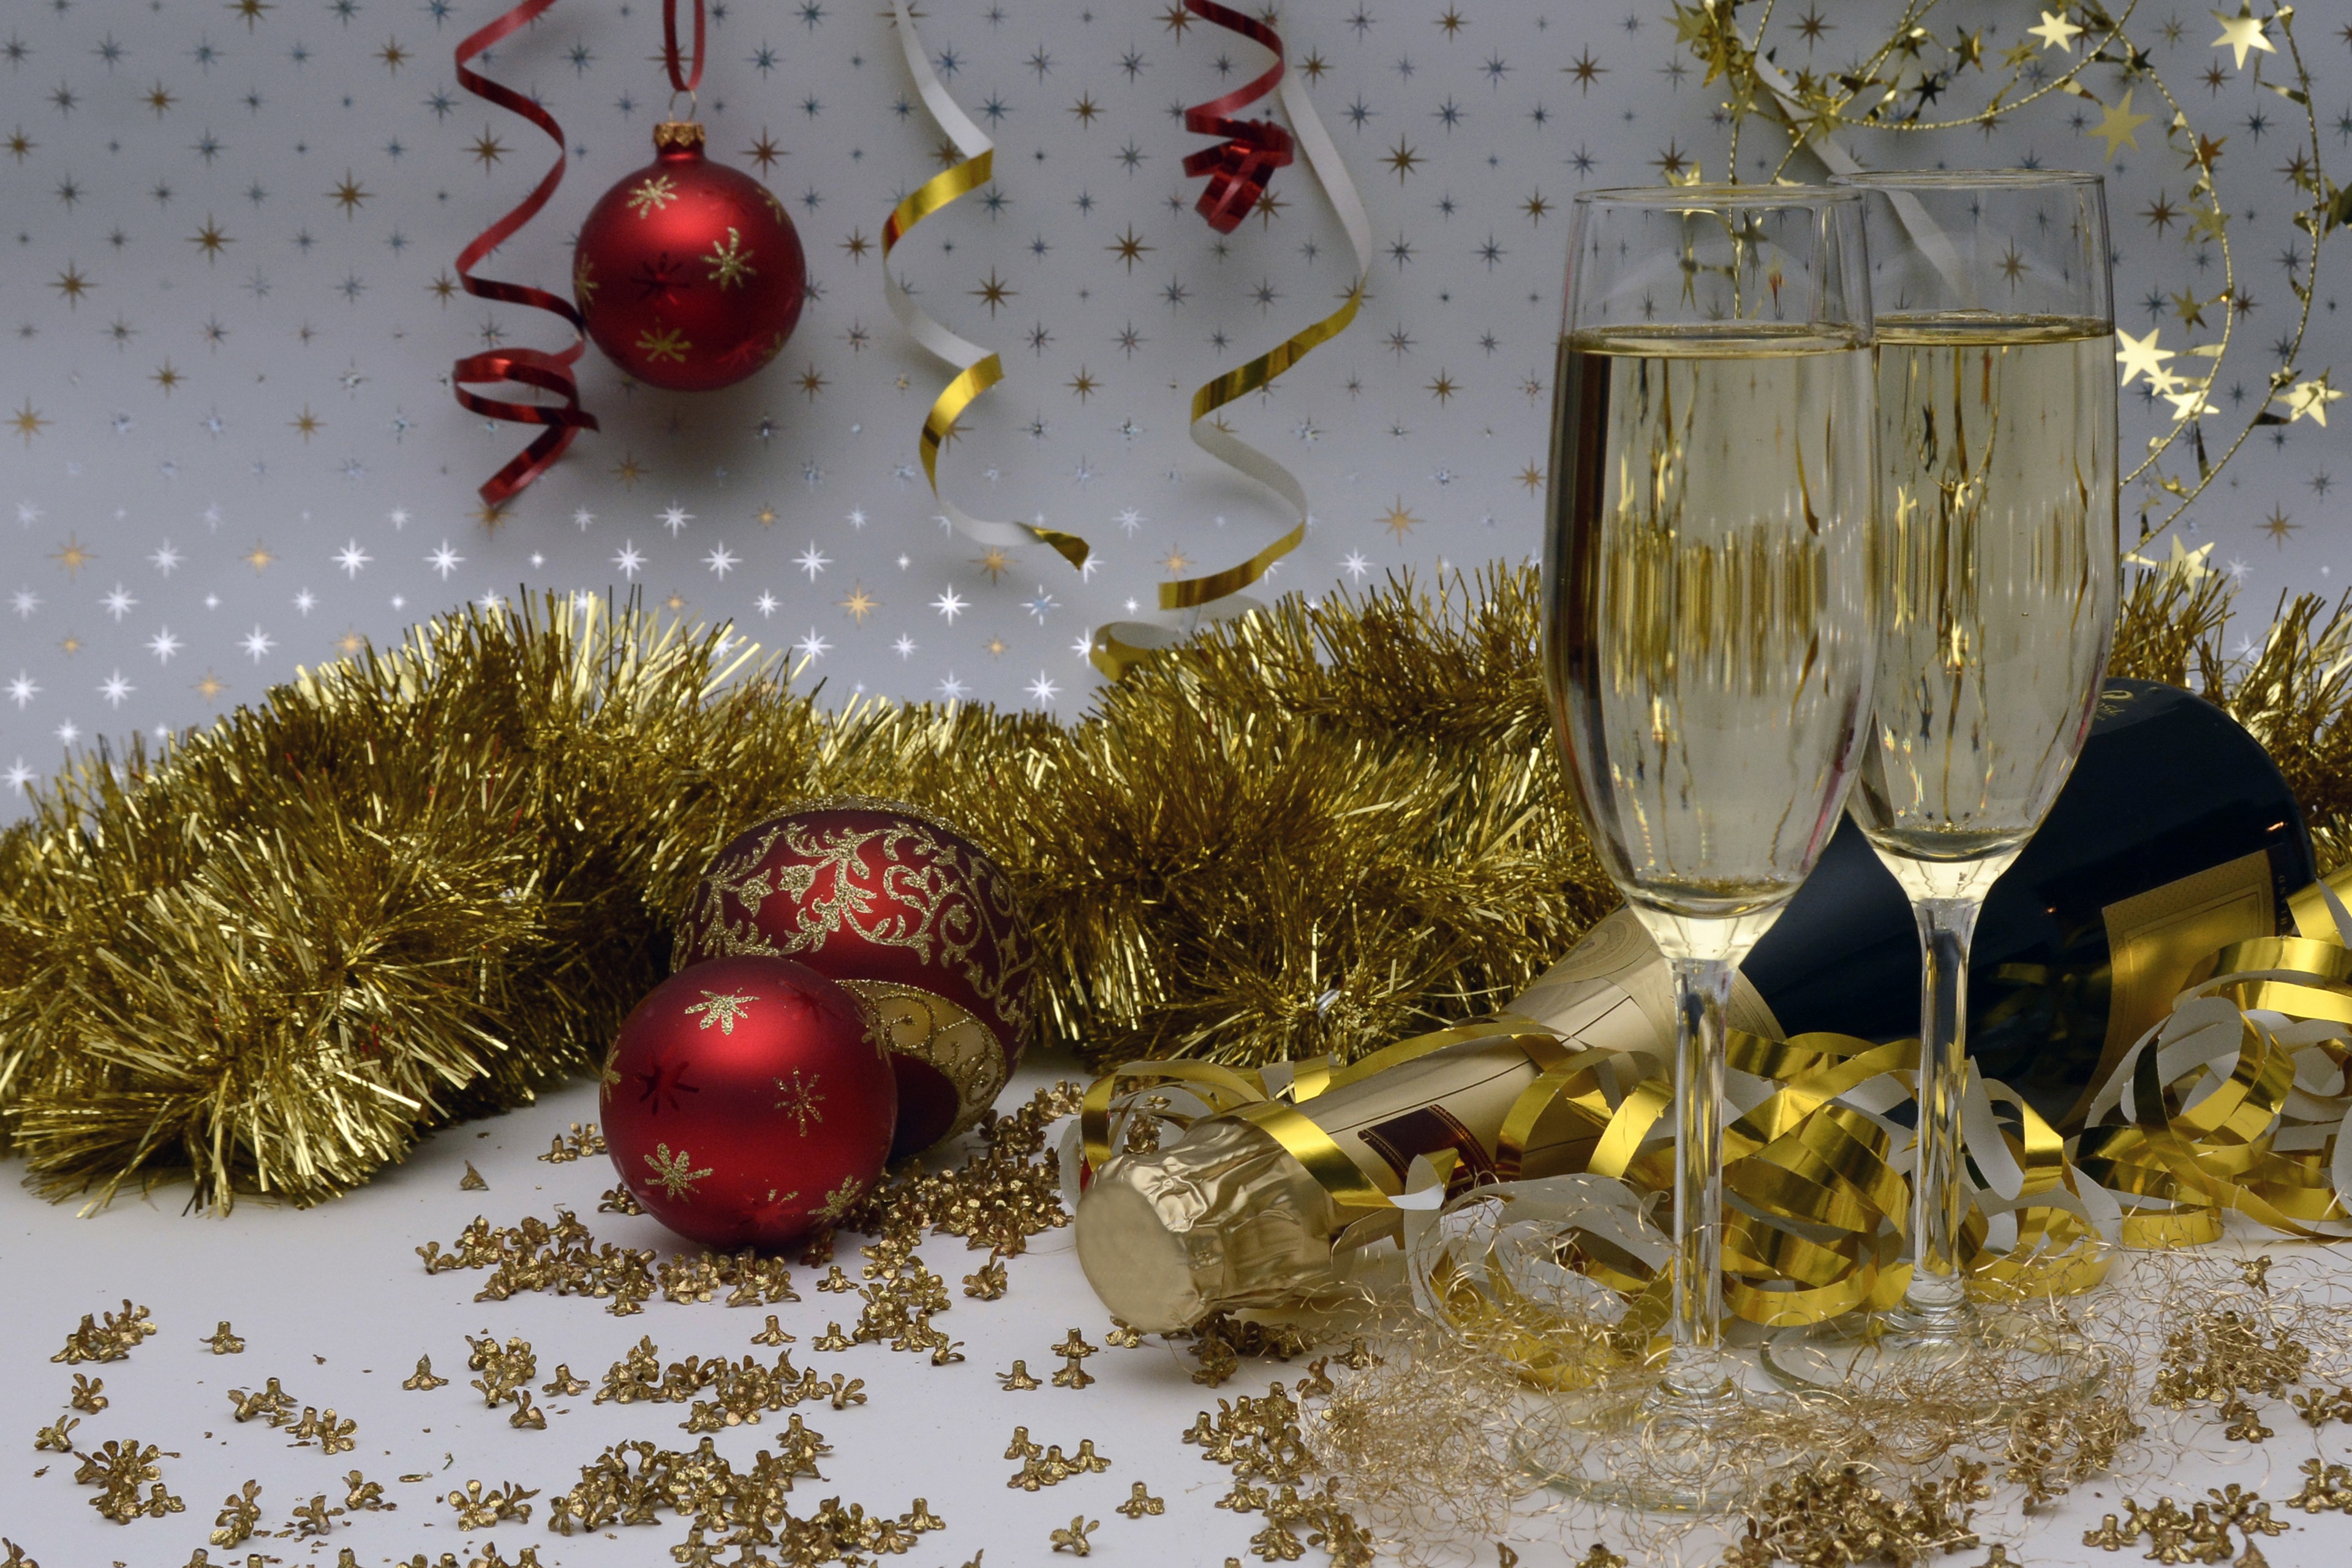 Лучшее время для покупки шампанского к Новому году - конец ноября